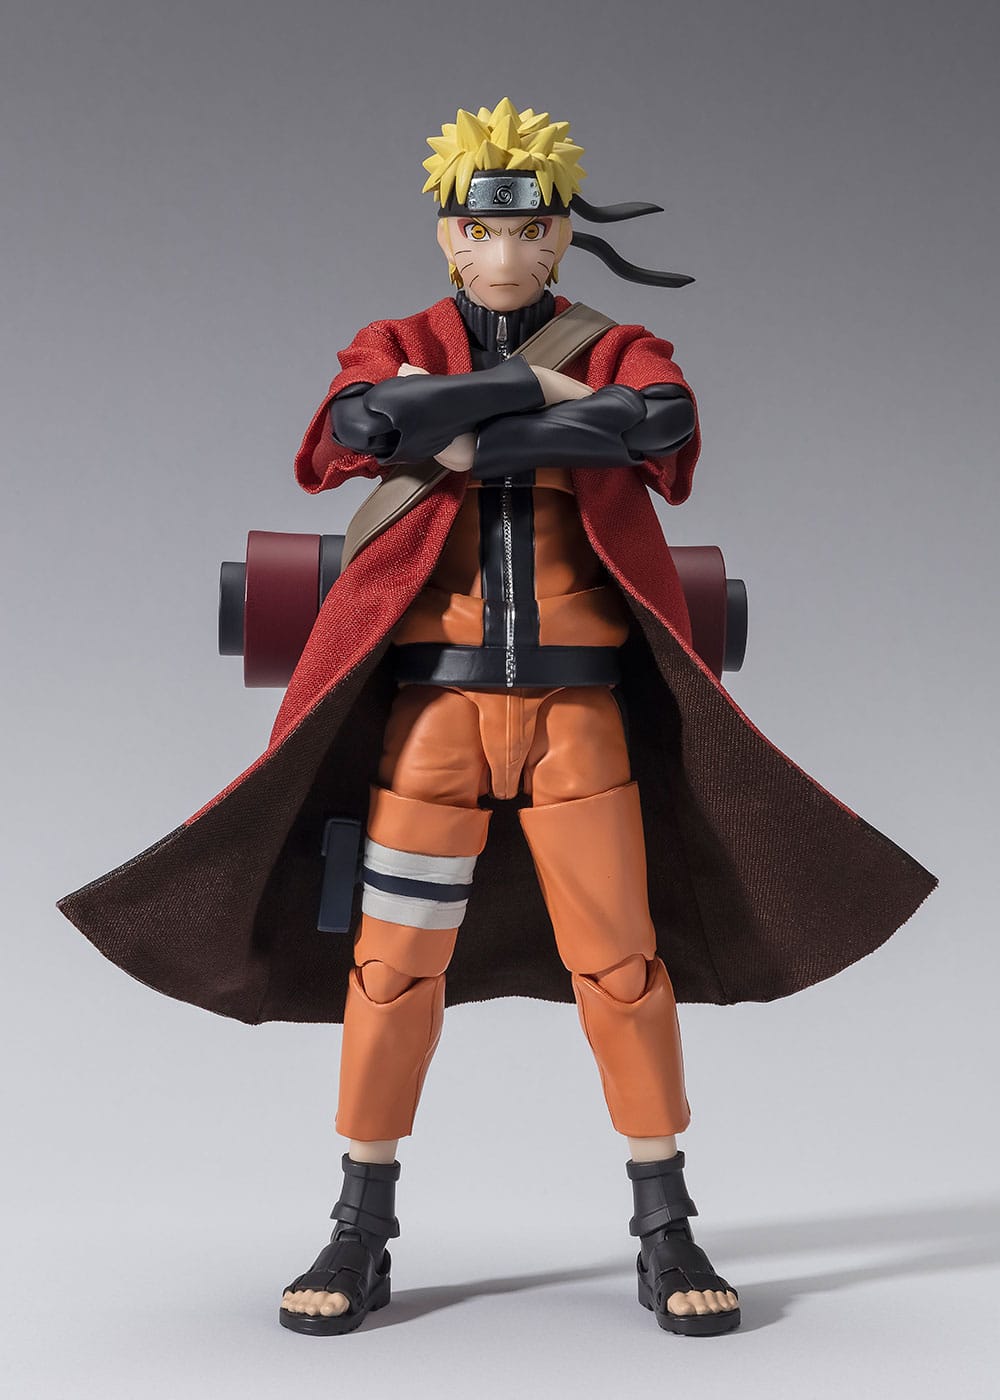 Naruto Shippuden - Naruto Uzumaki - Sage Mode - Savior of Konoha S.H. Figuarts Figure (Bandai)